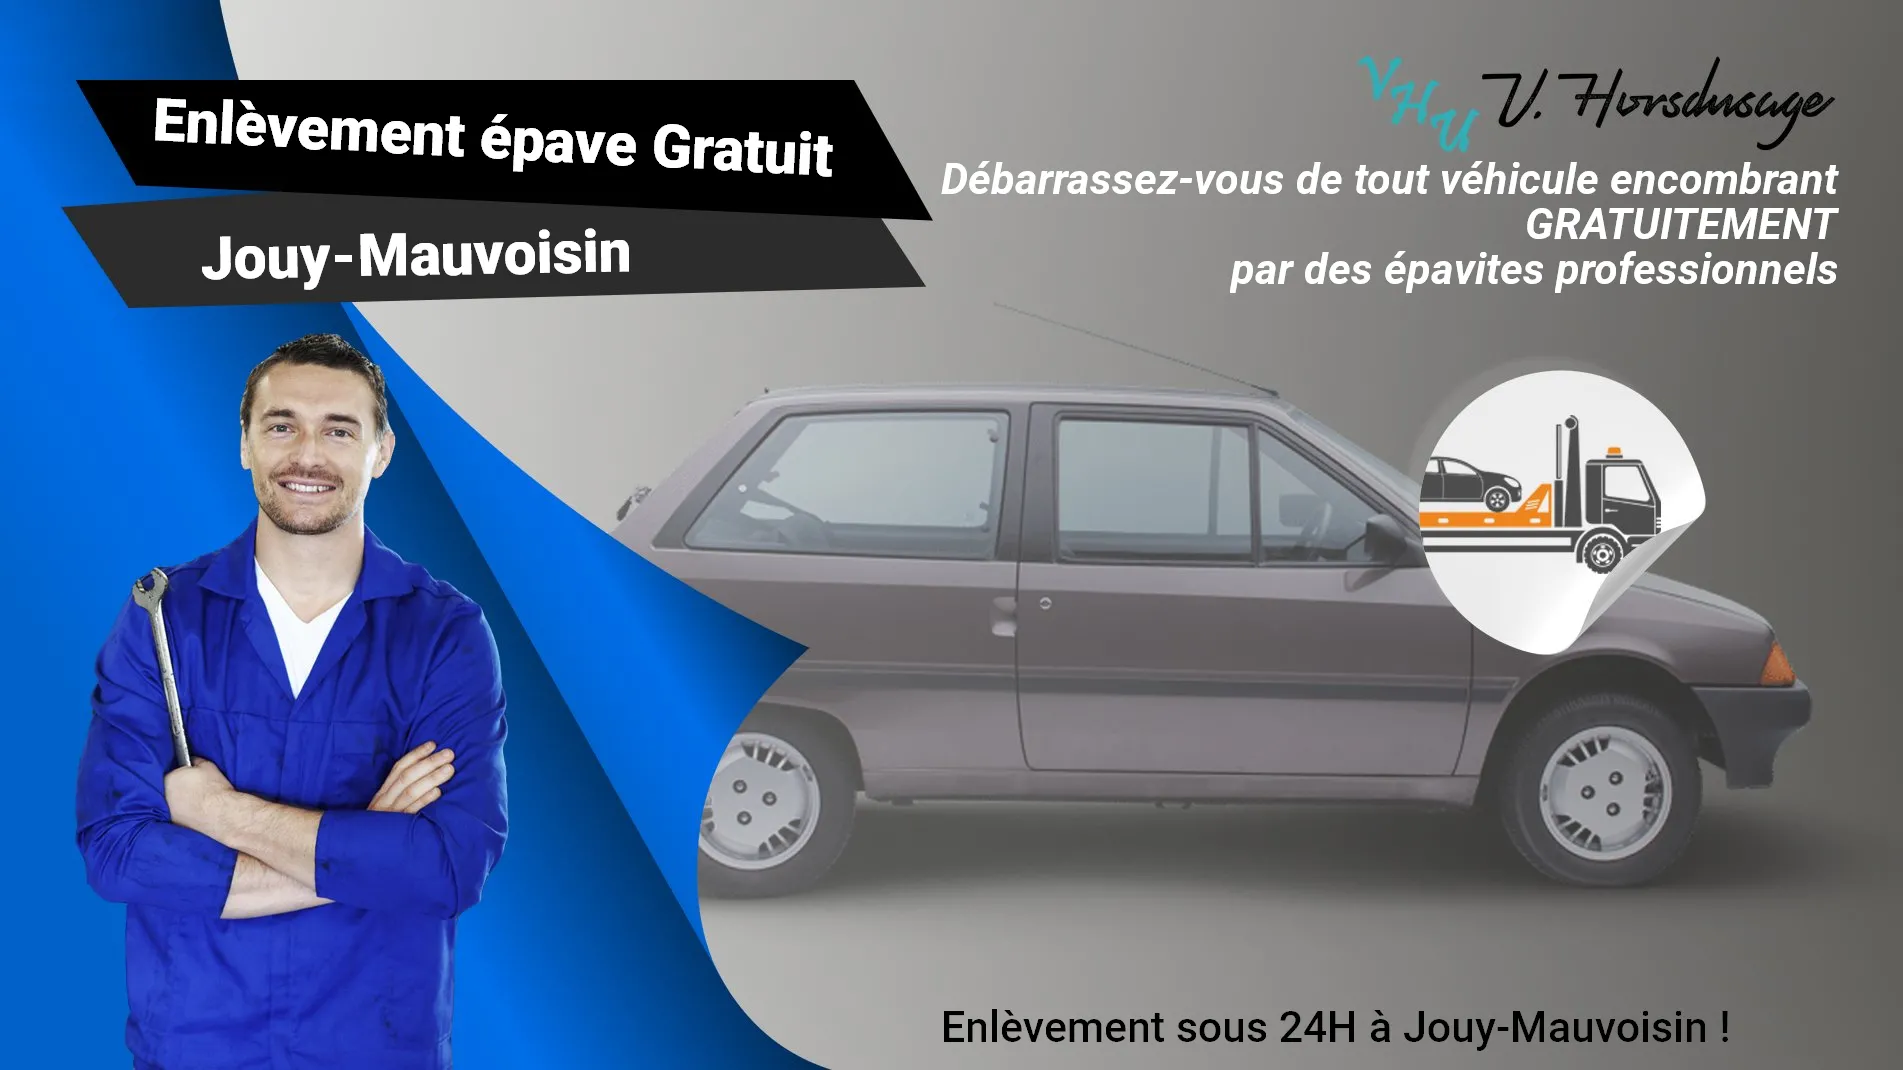 Pour un enlèvement gratuit à Jouy-Mauvoisin, contactez nos épavistes agréé VHU